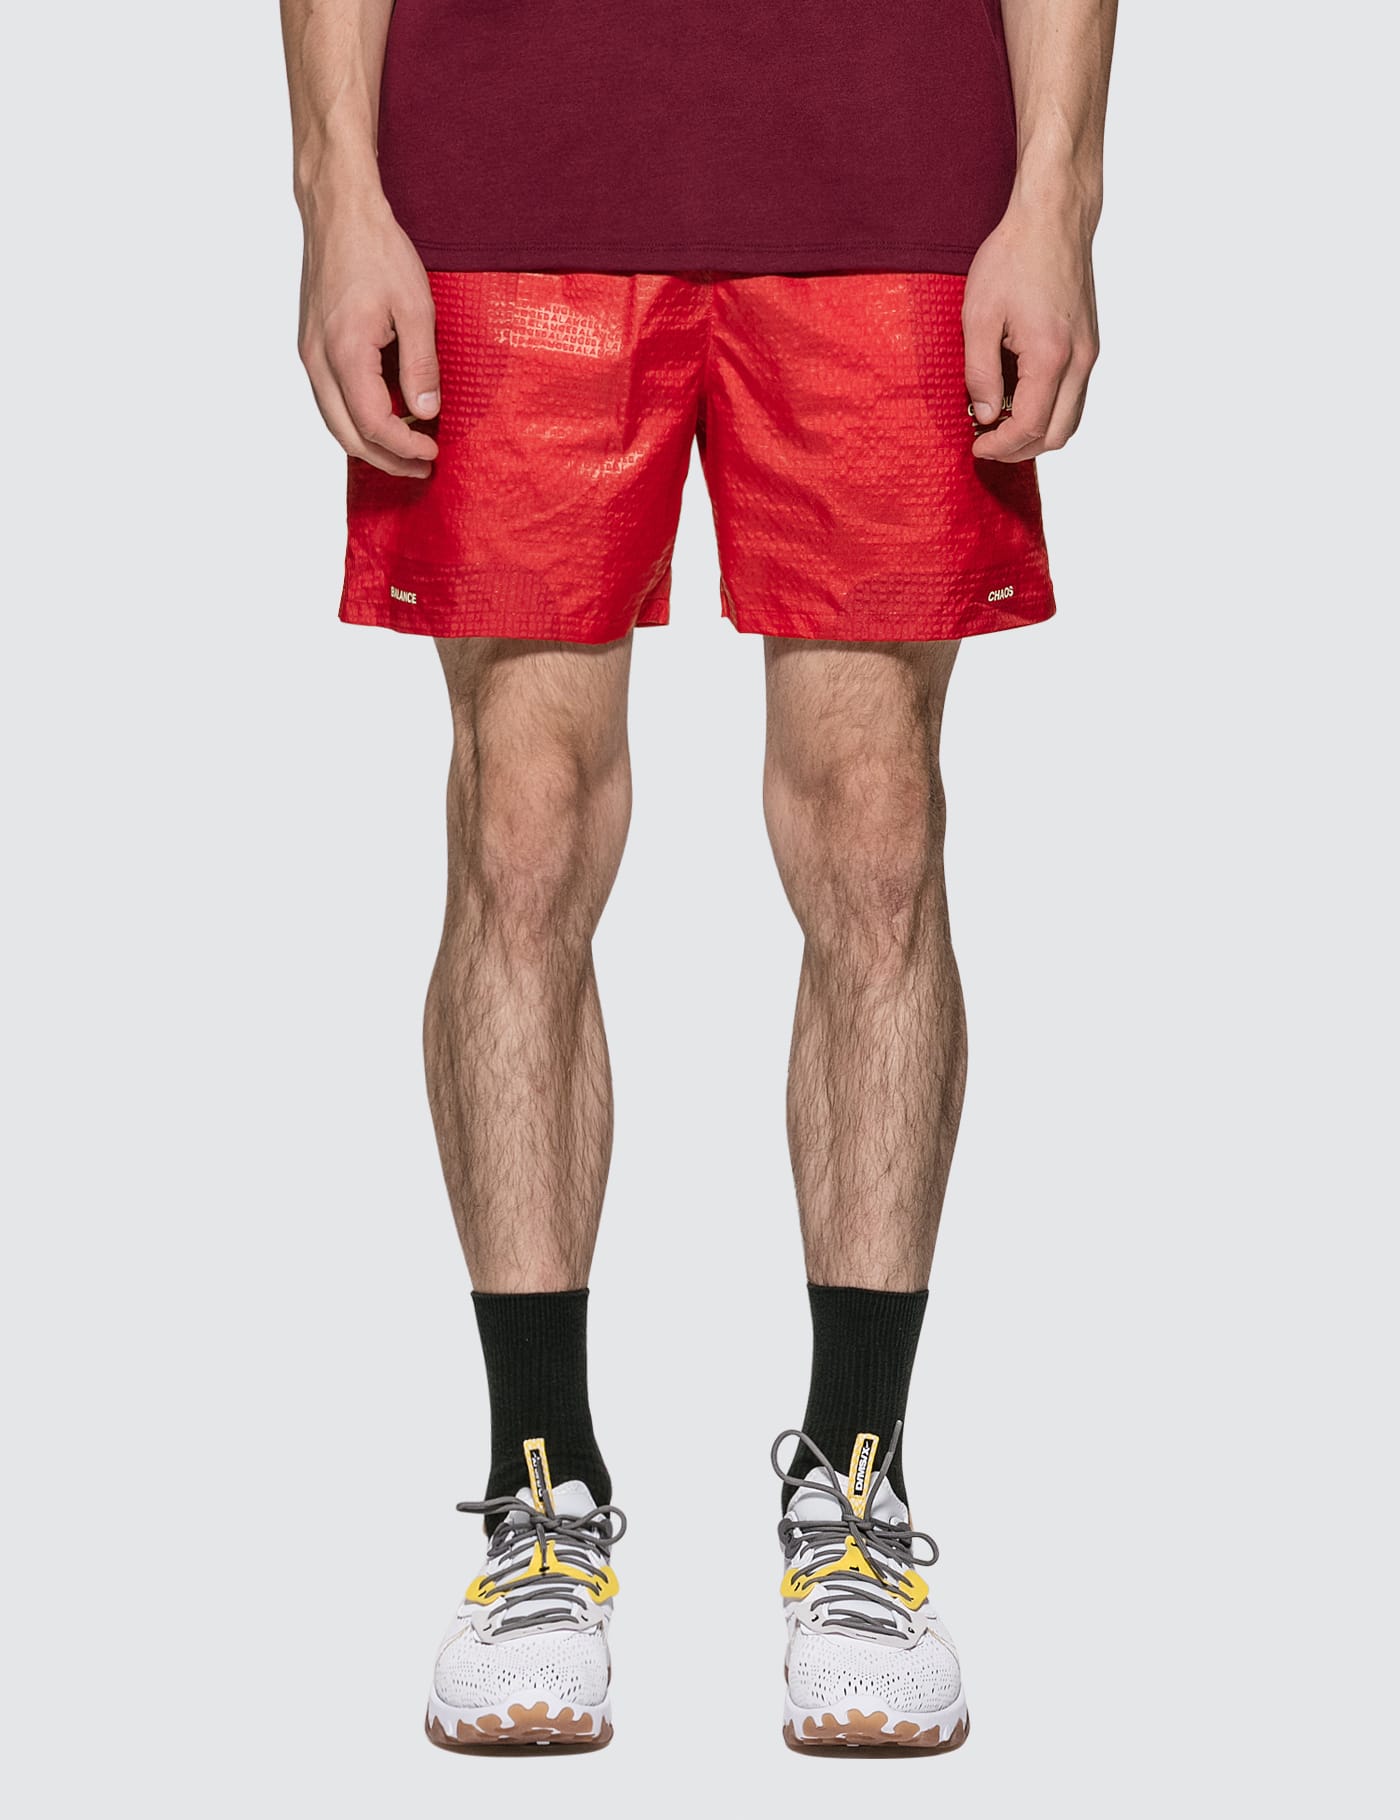 gyakusou shorts